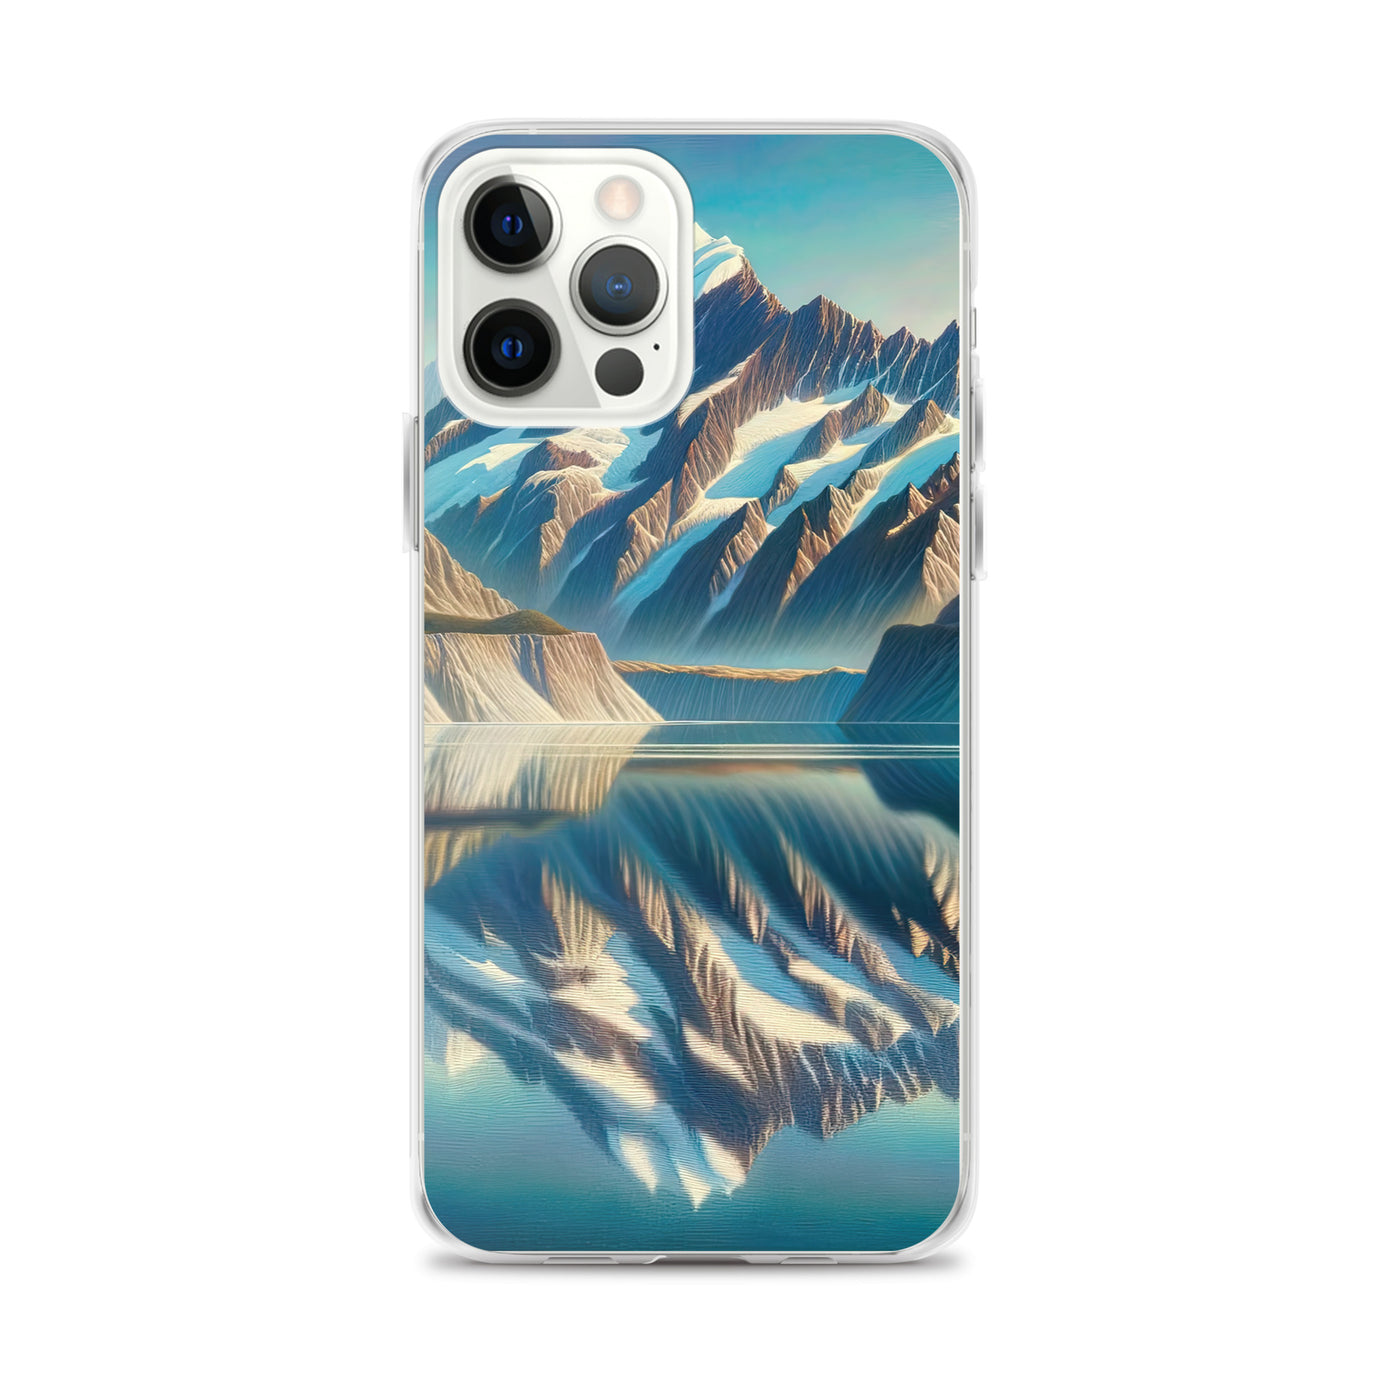 Ölgemälde eines unberührten Sees, der die Bergkette spiegelt - iPhone Schutzhülle (durchsichtig) berge xxx yyy zzz iPhone 12 Pro Max